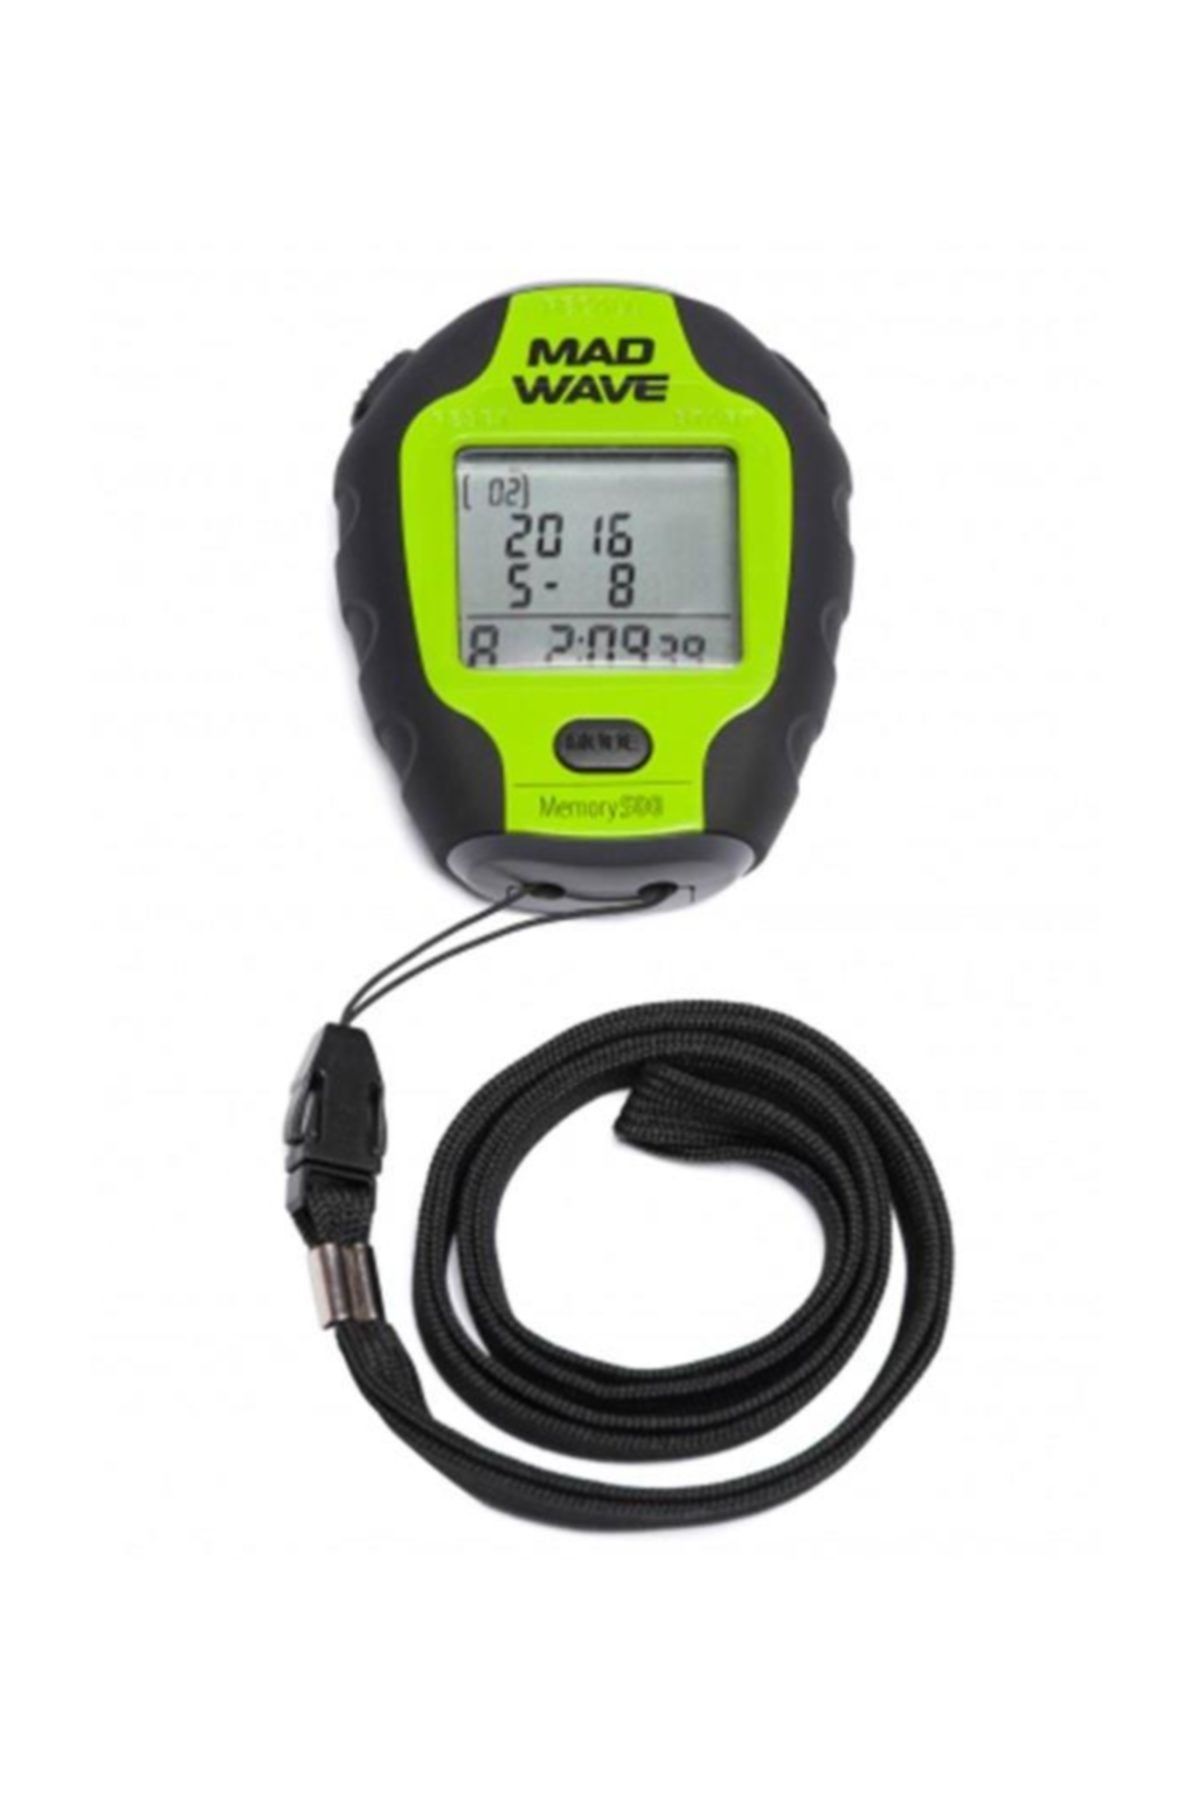 Mad Wave M1409 02 0 10w Stopwatch Stopwatch 200